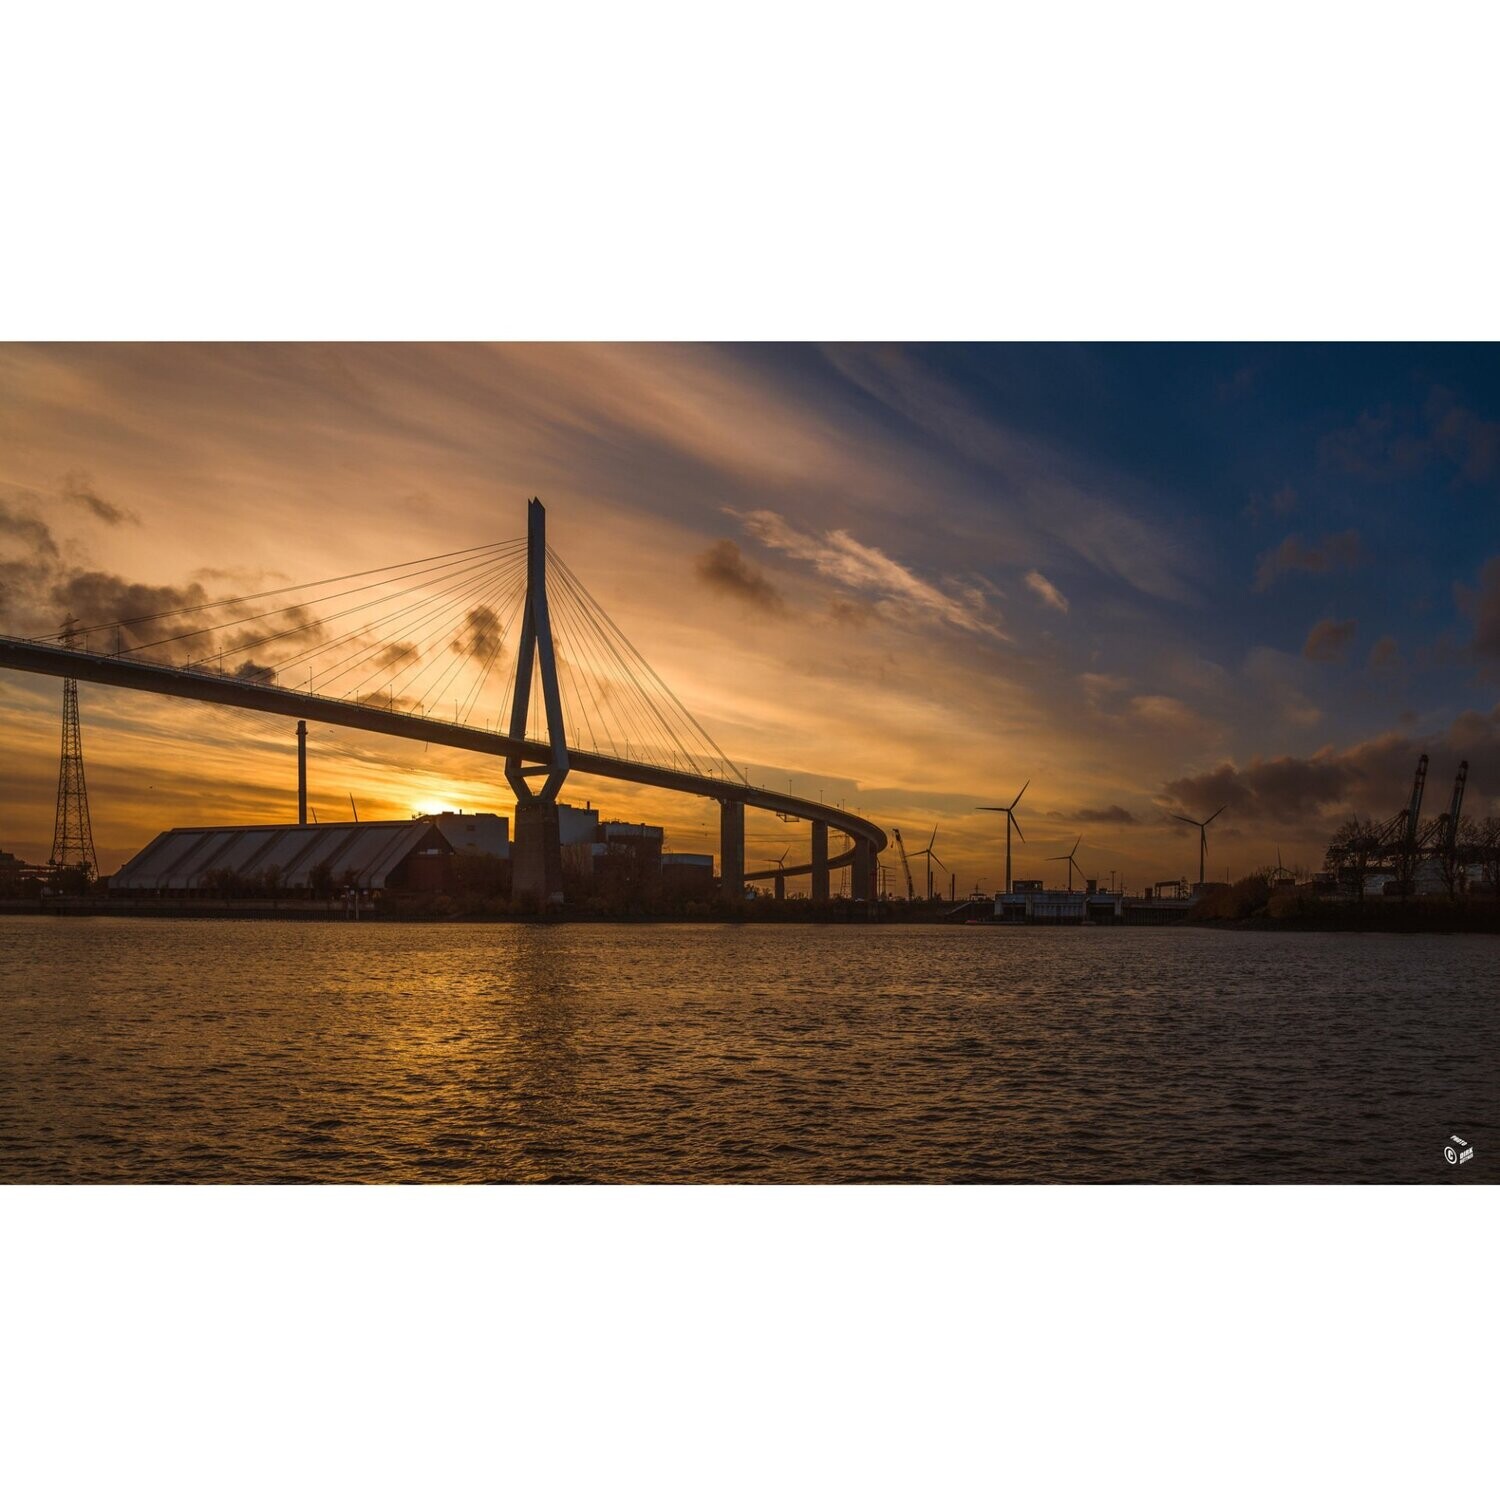 Hamburg Foto Datei - Köhlbrandbrücke im Sonnenuntergang, Abmessung nach Wunsch, max. Höhe 157,76 cm x Breite 280,53, zum Selbstdruck, Lieferung per filesharing